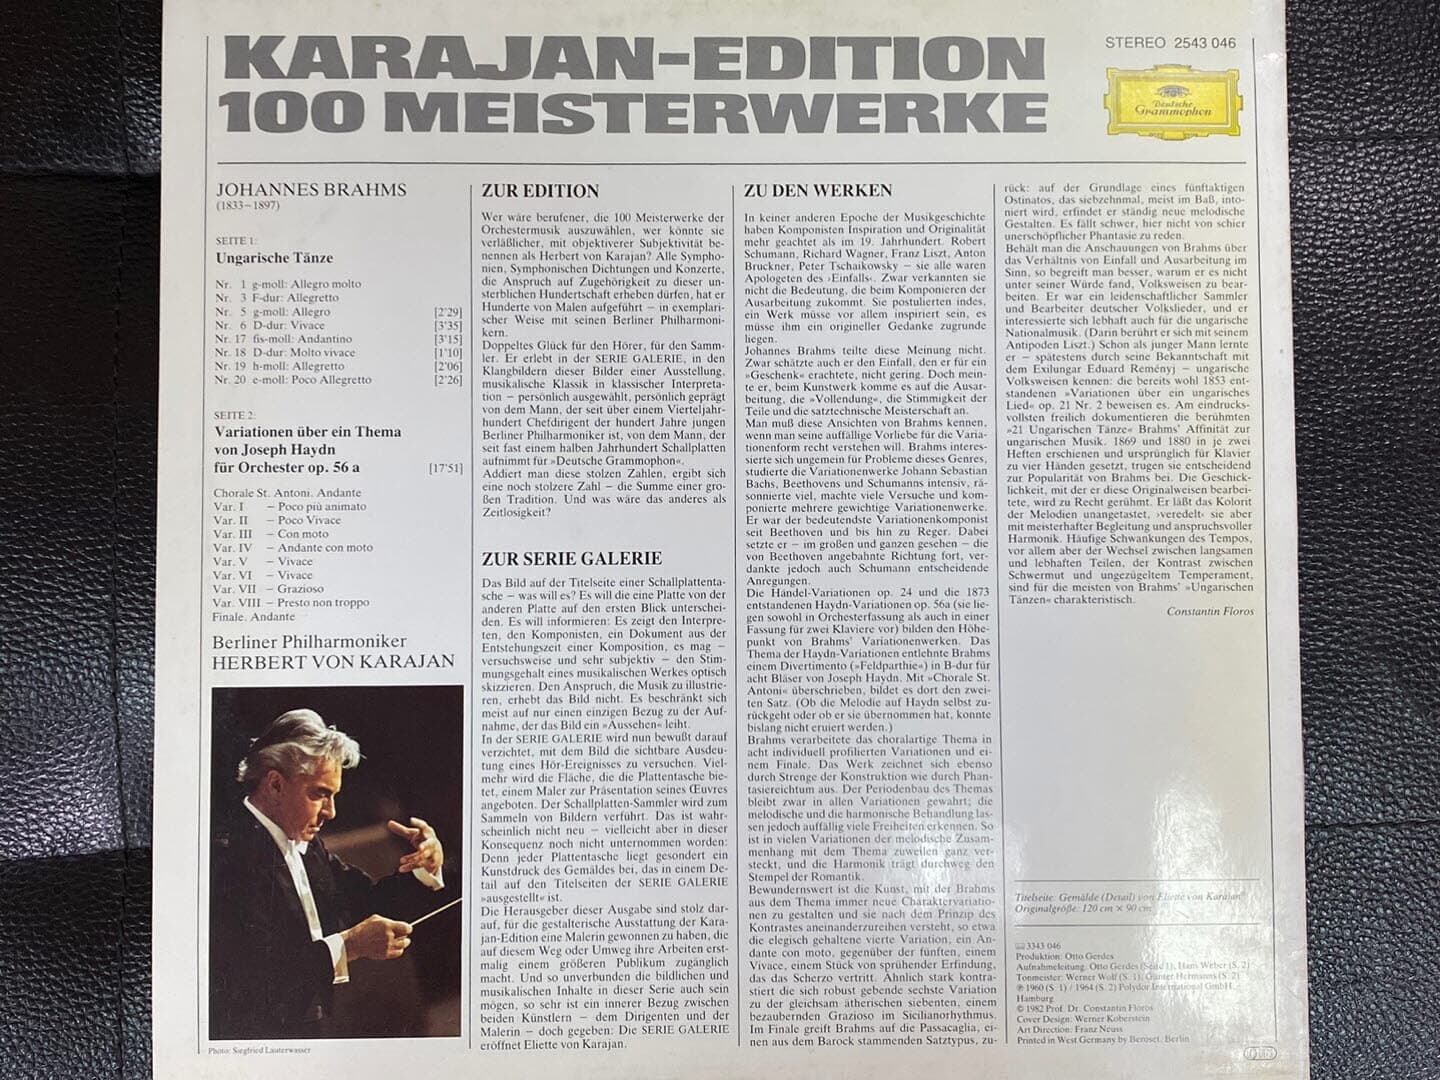 [LP] 카라얀 - Karajan - Brahms,Haydn 8 Ungarische Tanze,Variationen [Karajan-Edition 100] LP [독일반]